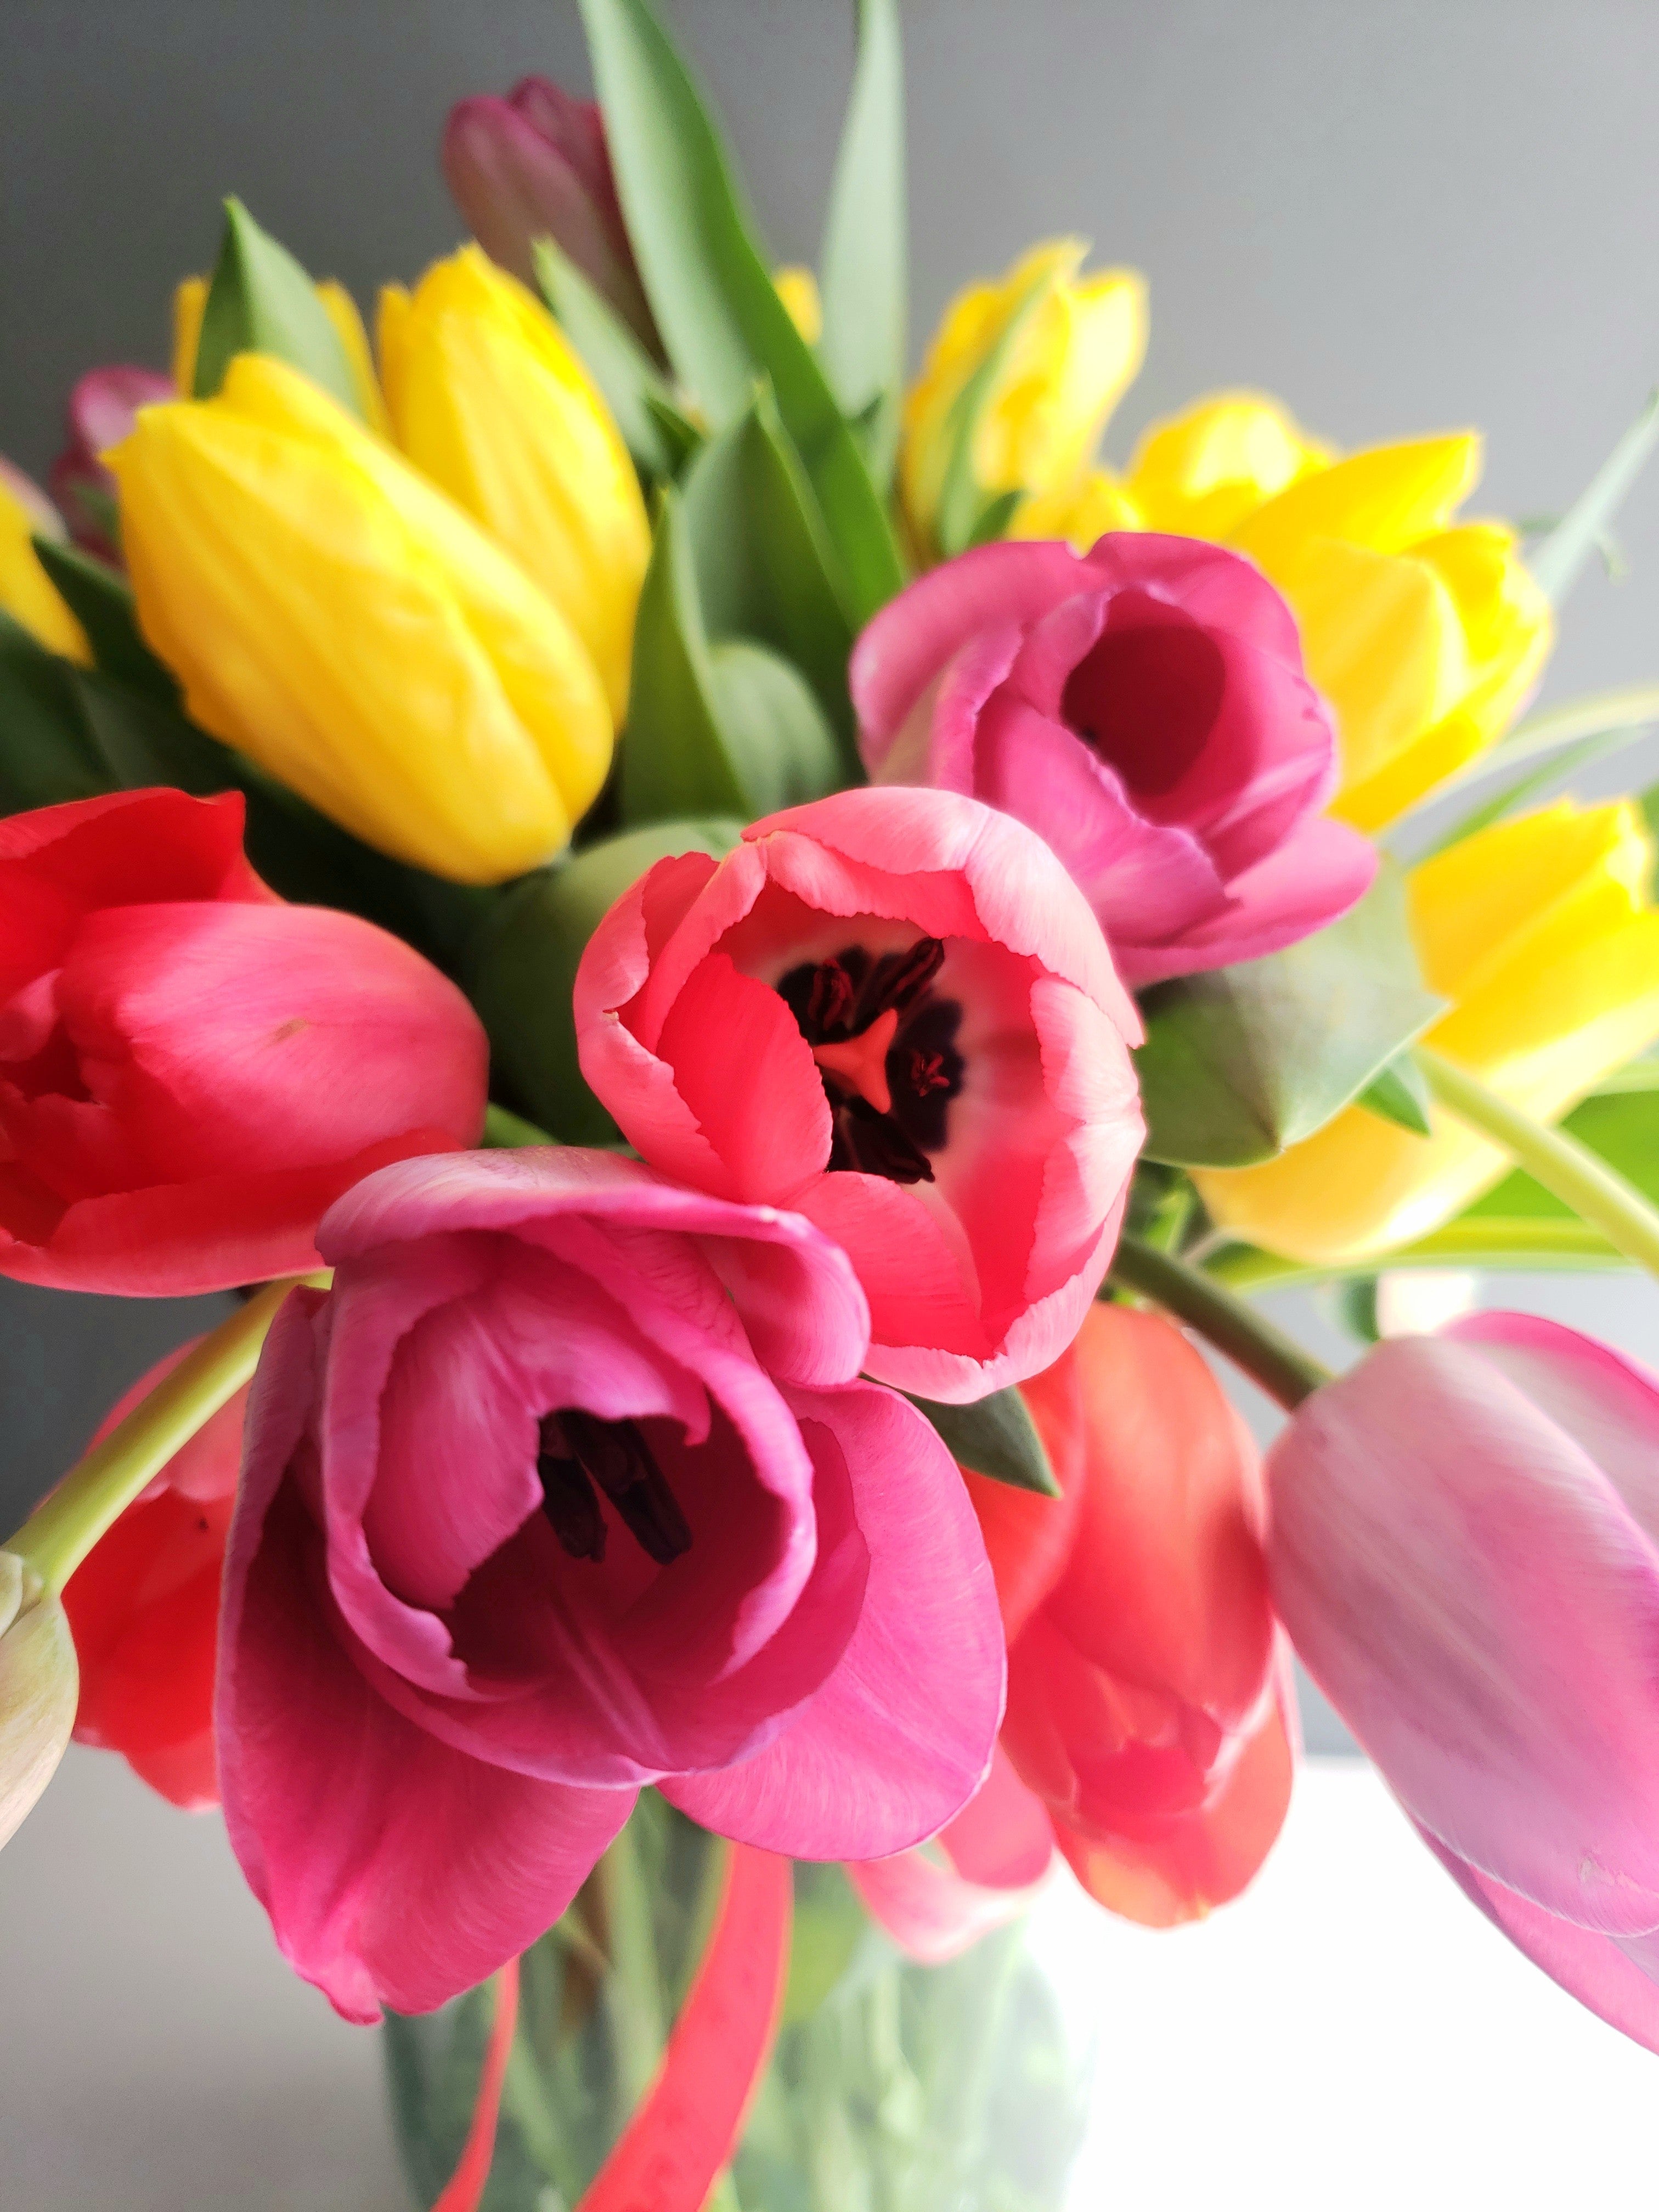 Amor en Tulipanes